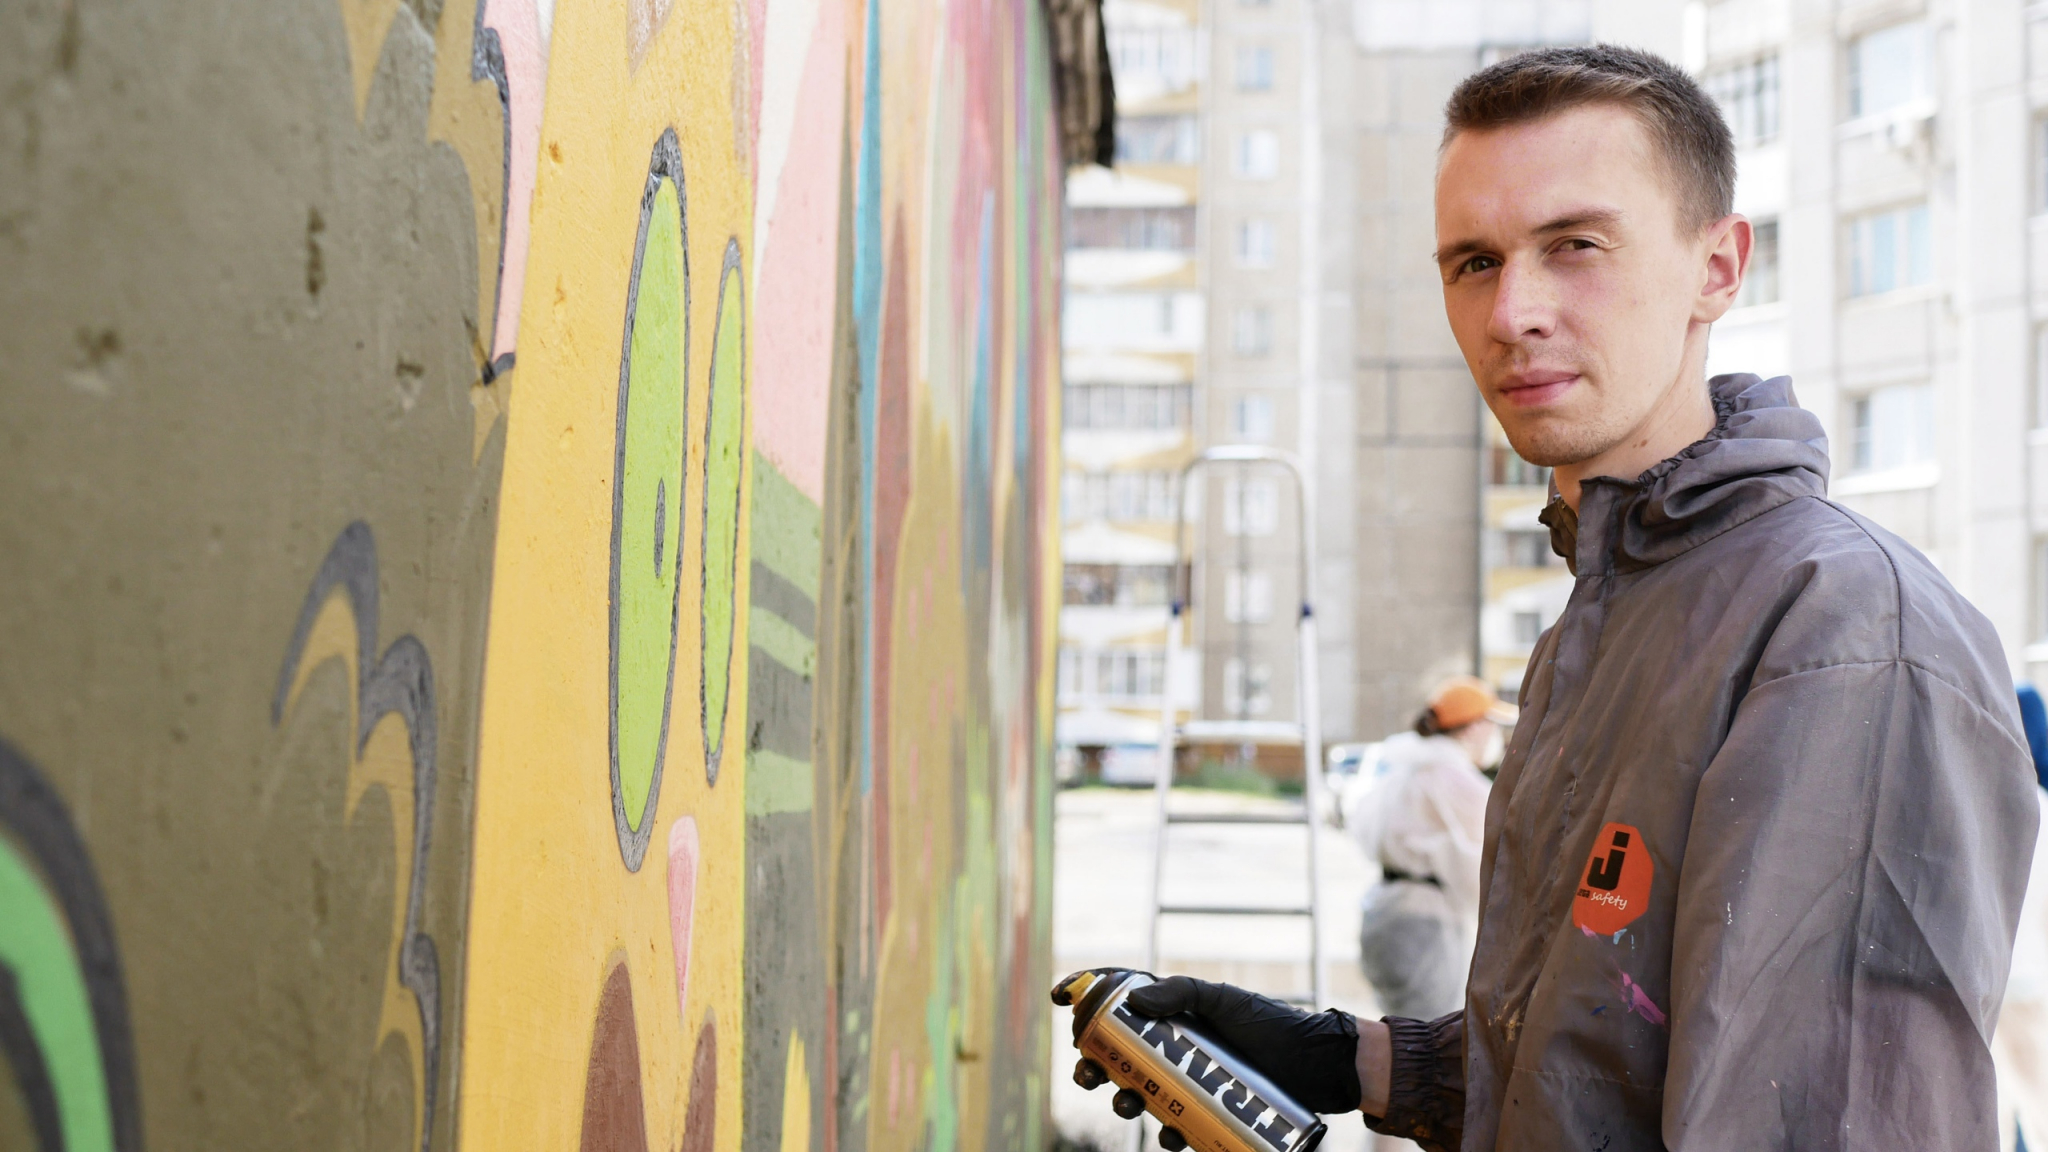 Проект «Краски города» вновь хочет встряхнуть Йошкар-Олу невероятными граффити